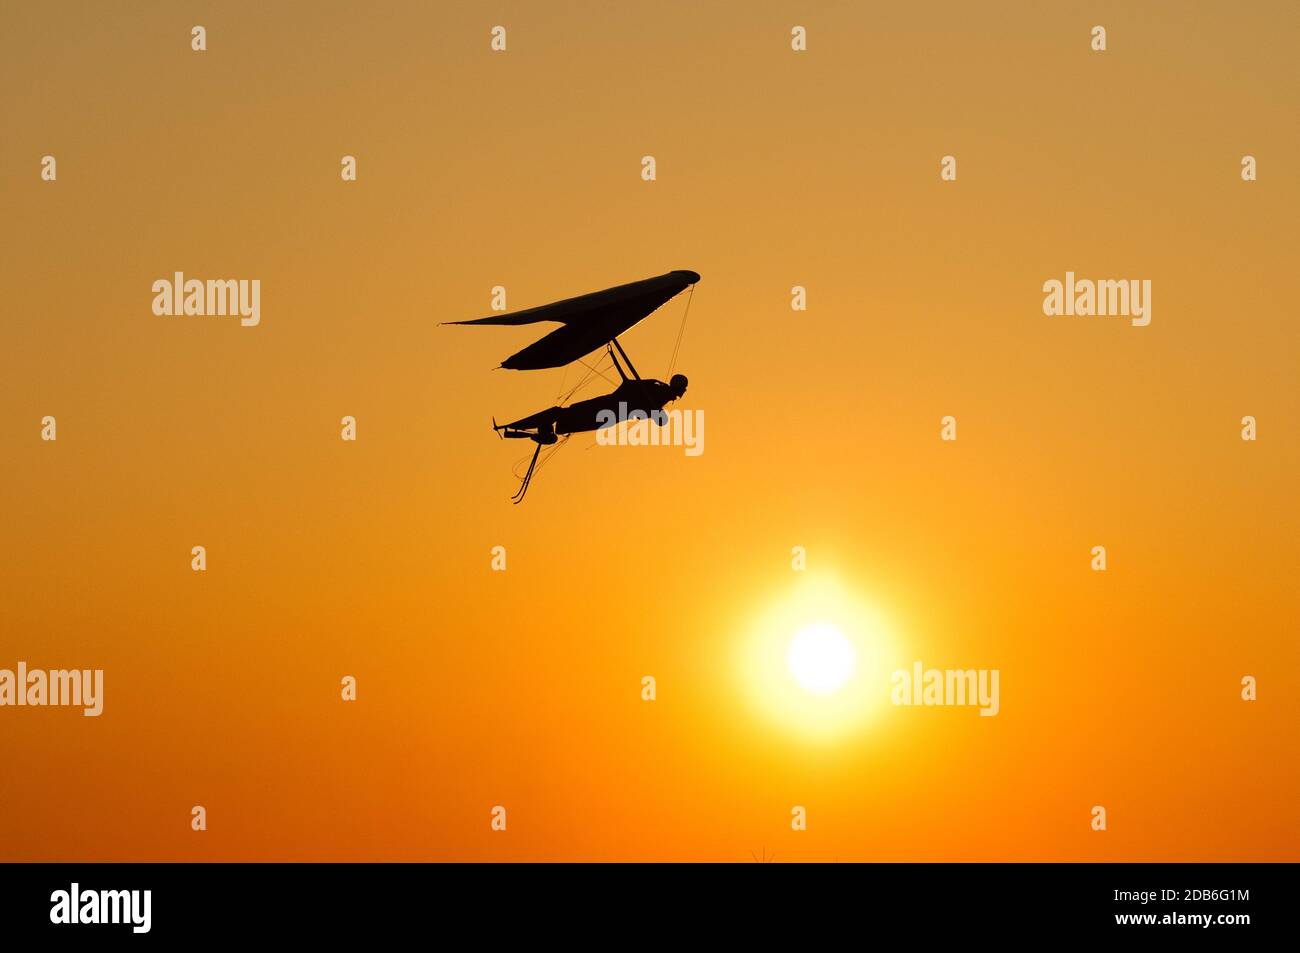 La silhouette dell'ala deltaplano si appende al sole brillante del tramonto. Sogno di volare come un uccello Foto Stock